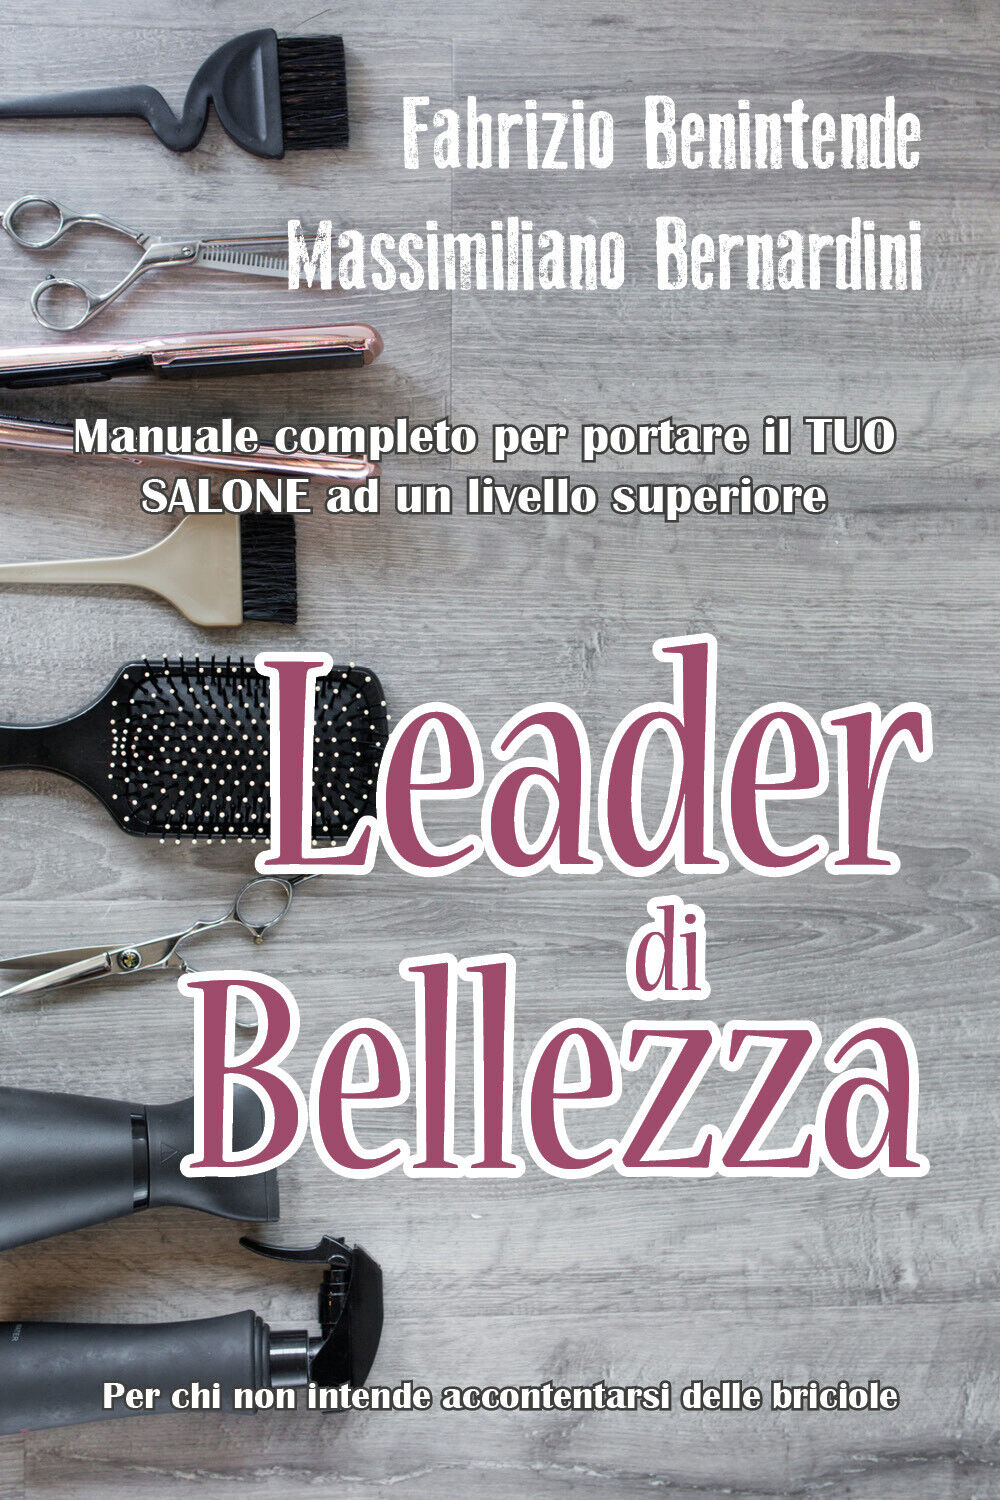 Leader di Bellezza di Fabrizio Benintende Mass. . . Bernardini,  2019,  Youcanpr libro usato